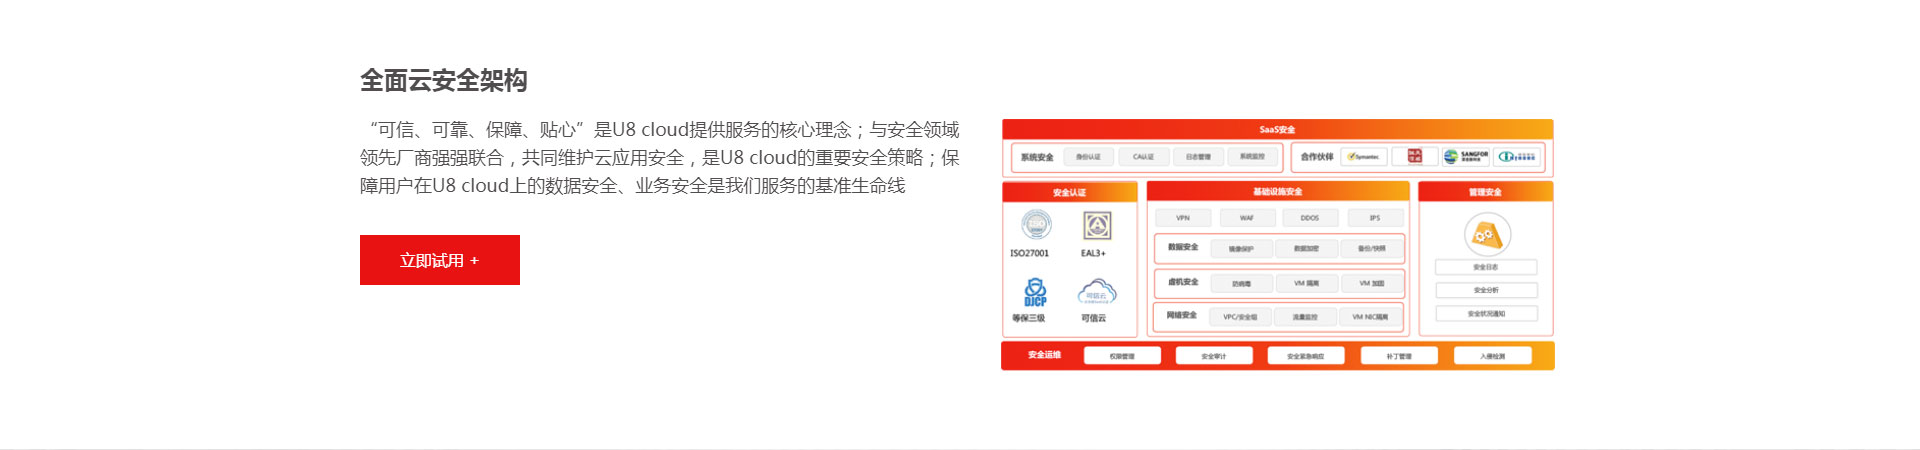 用友U8-Cloud---用友网络科技股份有限公司_10.jpg